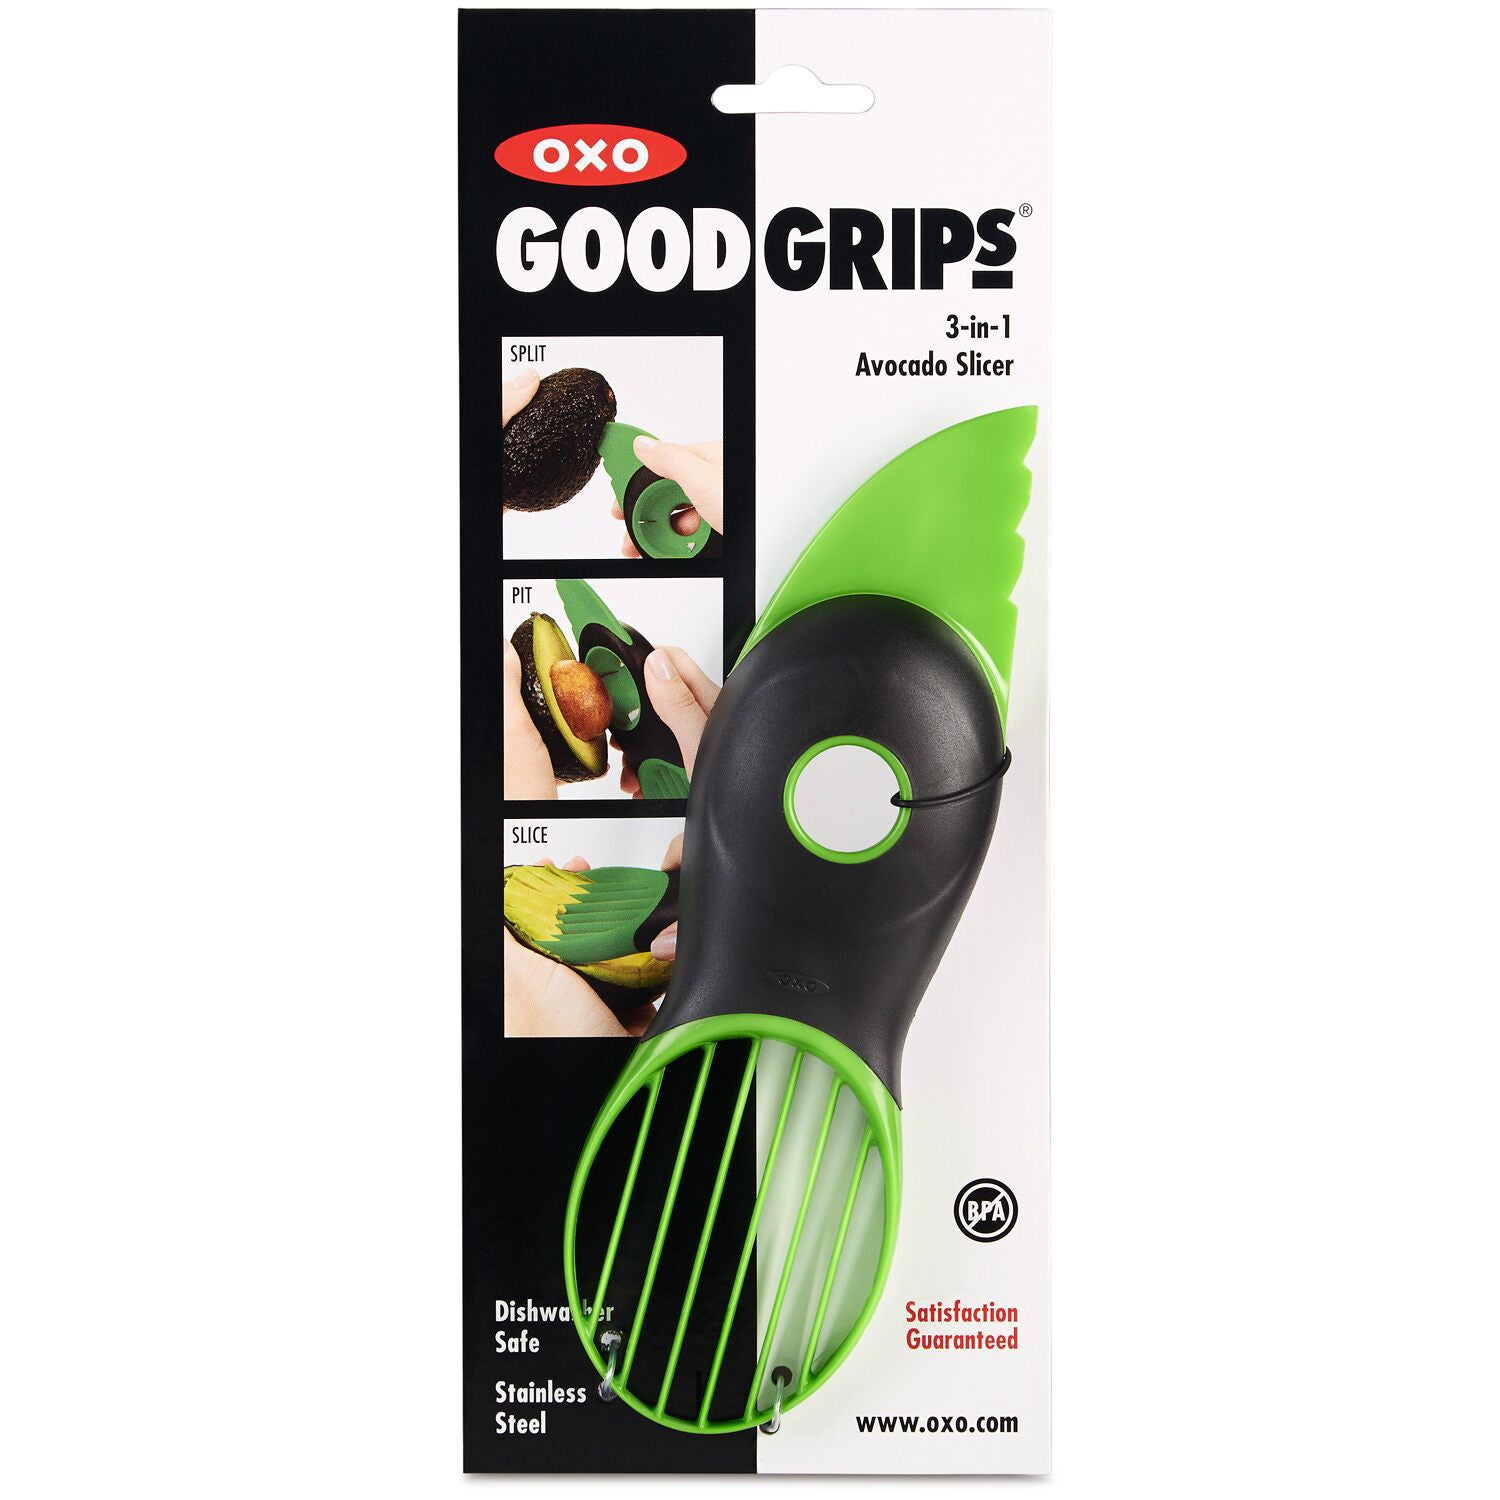 OXO Good Grips 3 in 1 Avocado Slicer